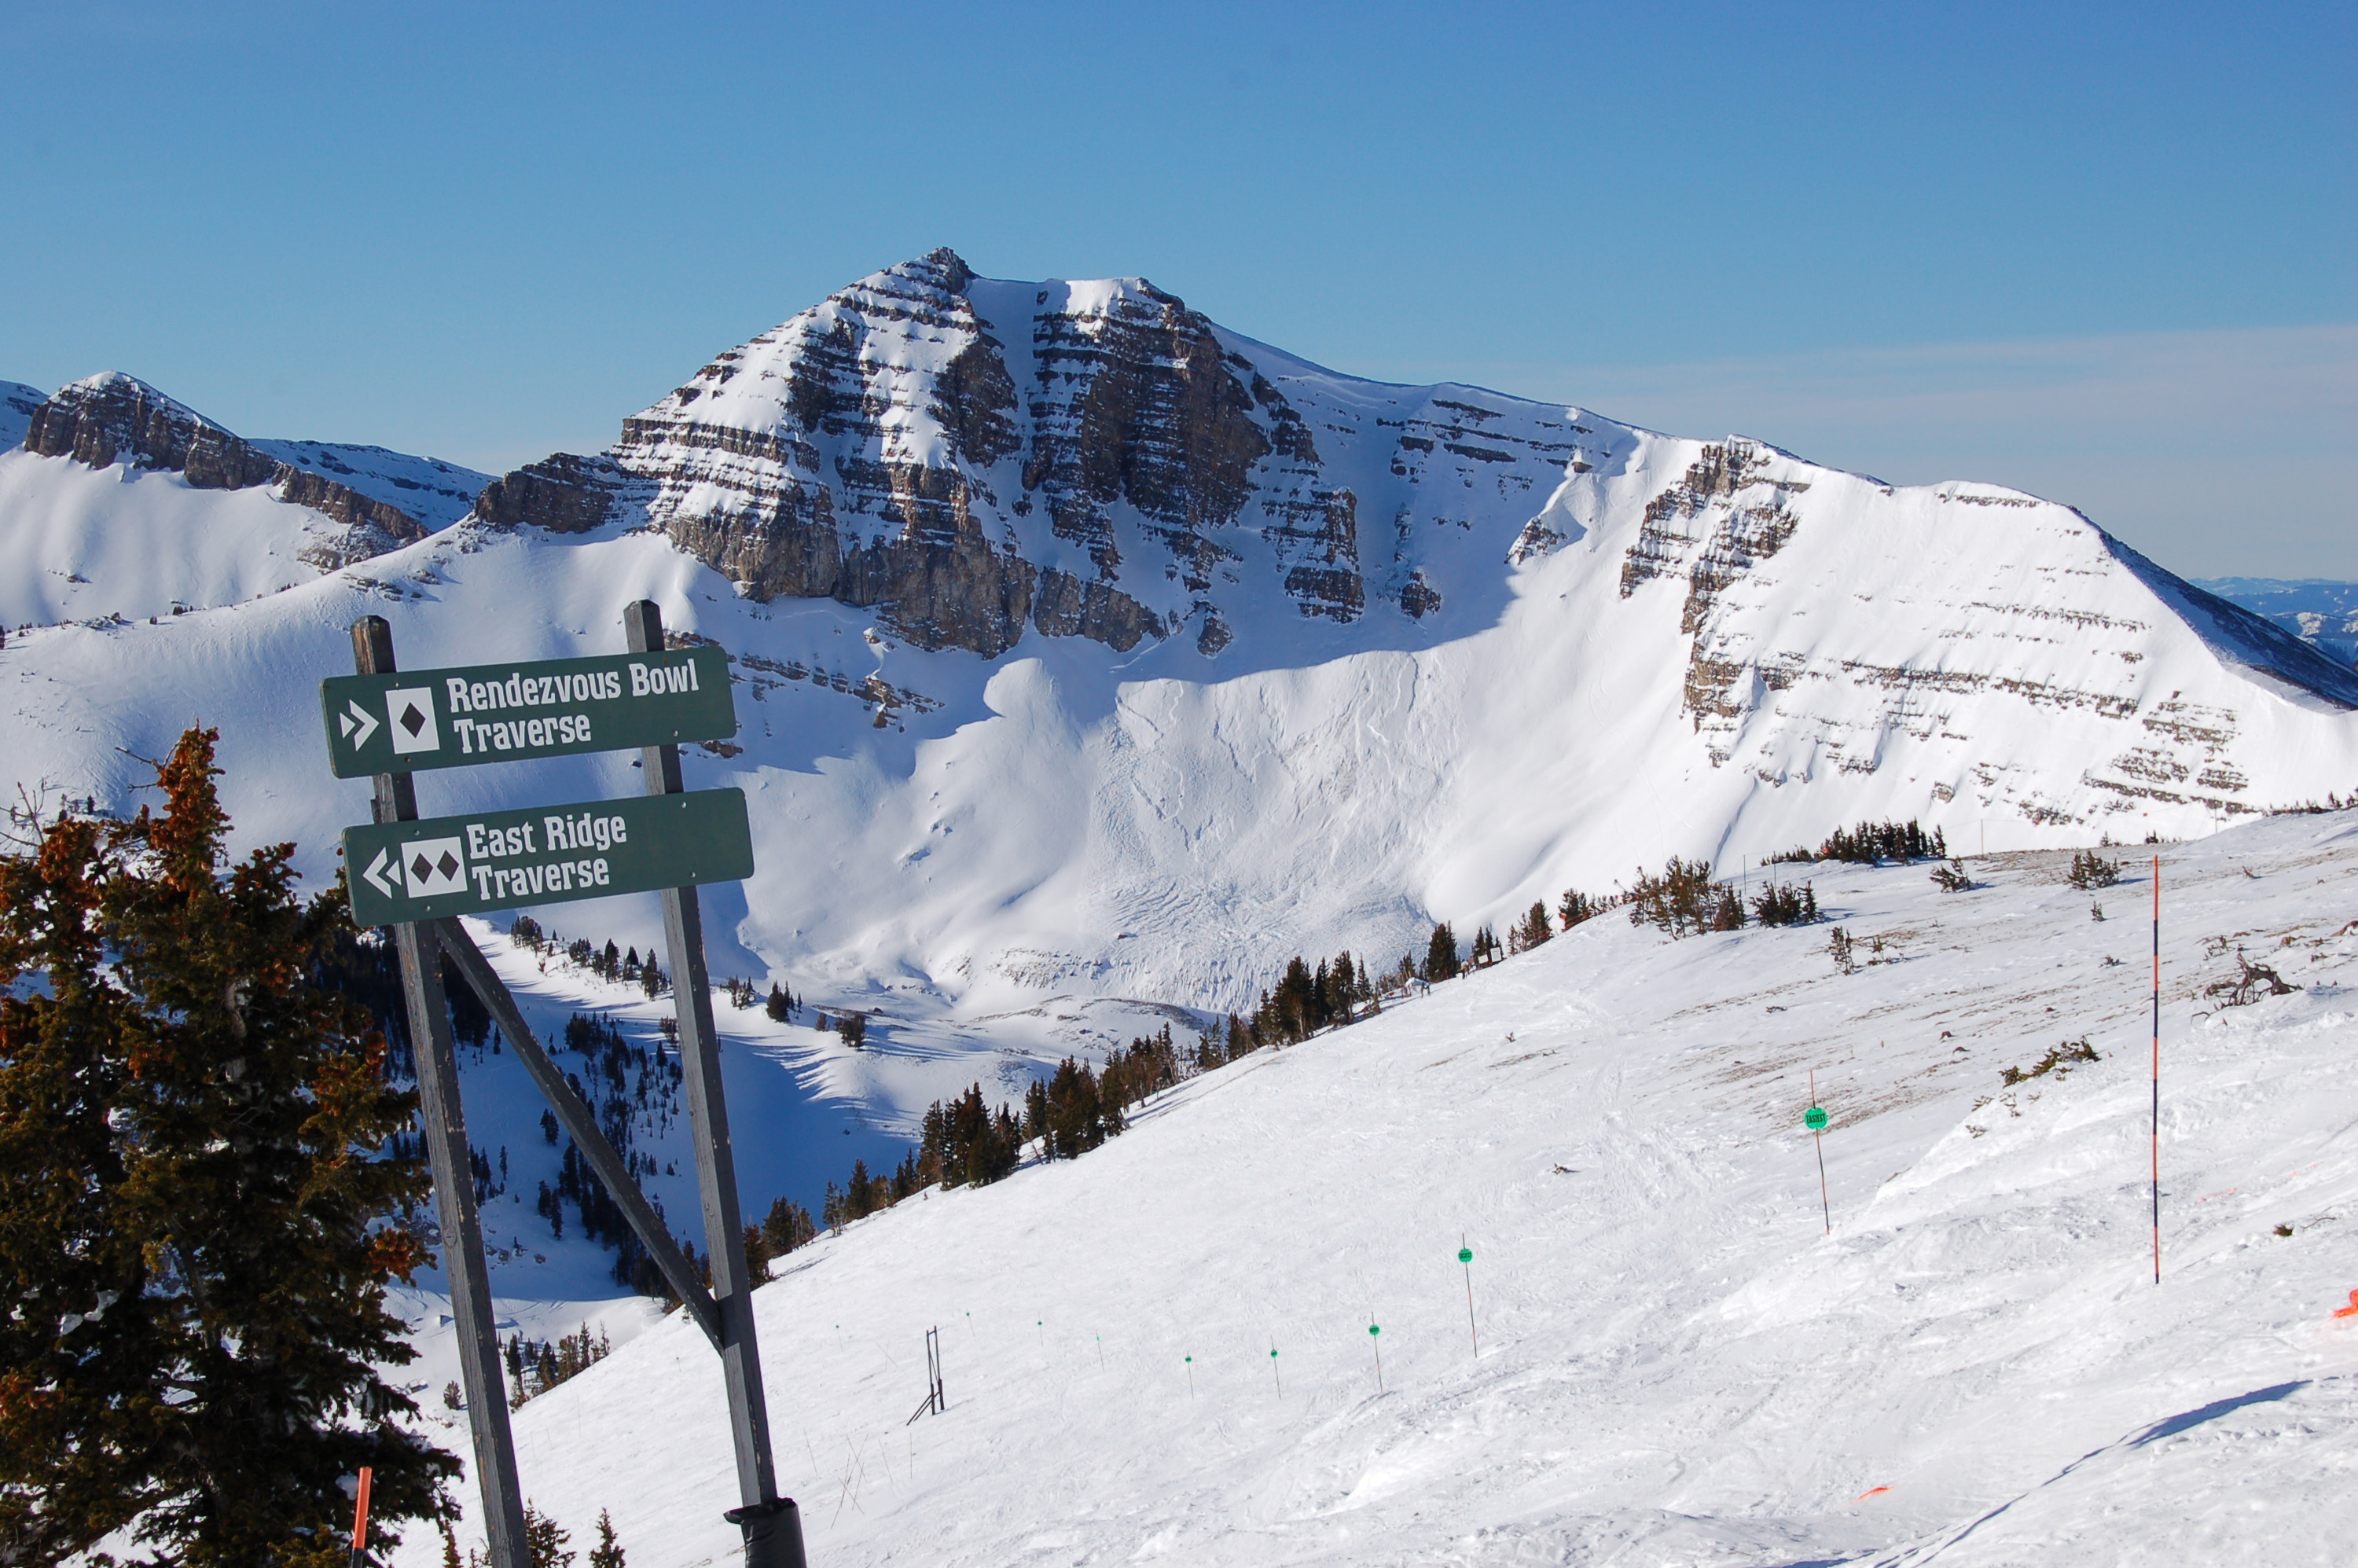 De IKON skipas geeft toegang tot meerdere skigebieden in Canada en Amerika, dat is ideaal voor een skisafari